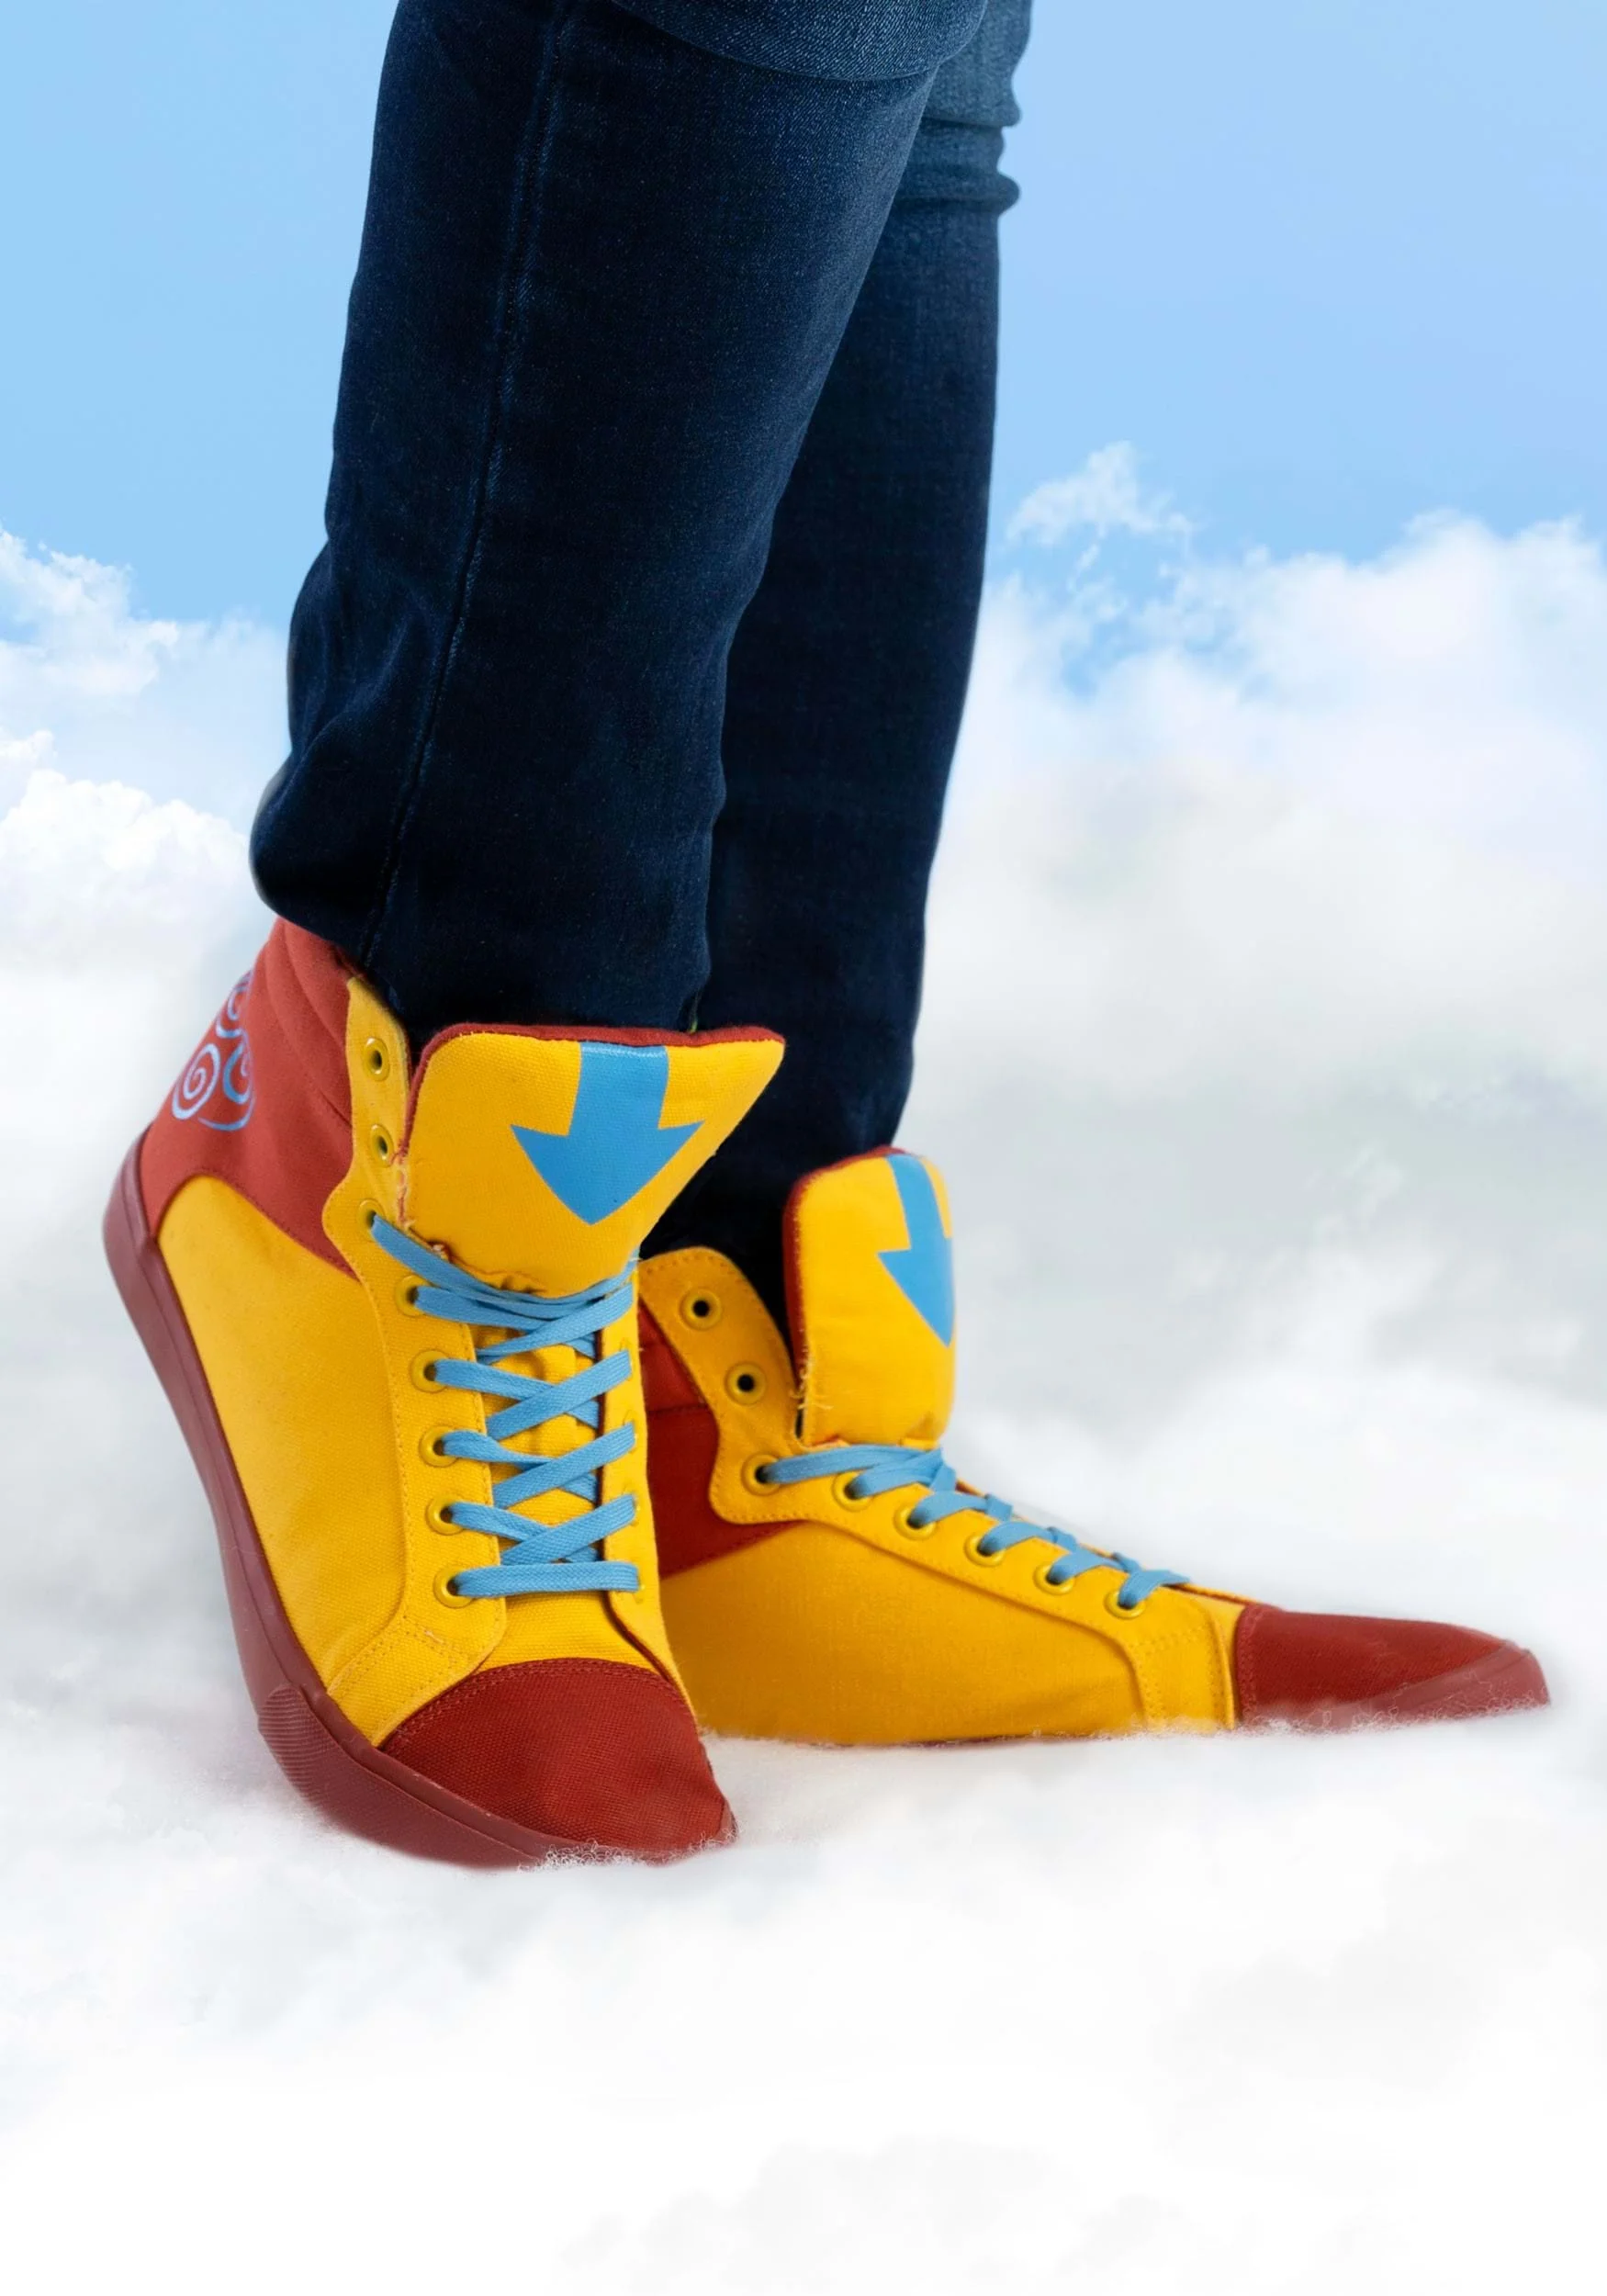 Вышли кроссовки в стиле аватара Аанга из мультсериала Nickelodeon - фото 3